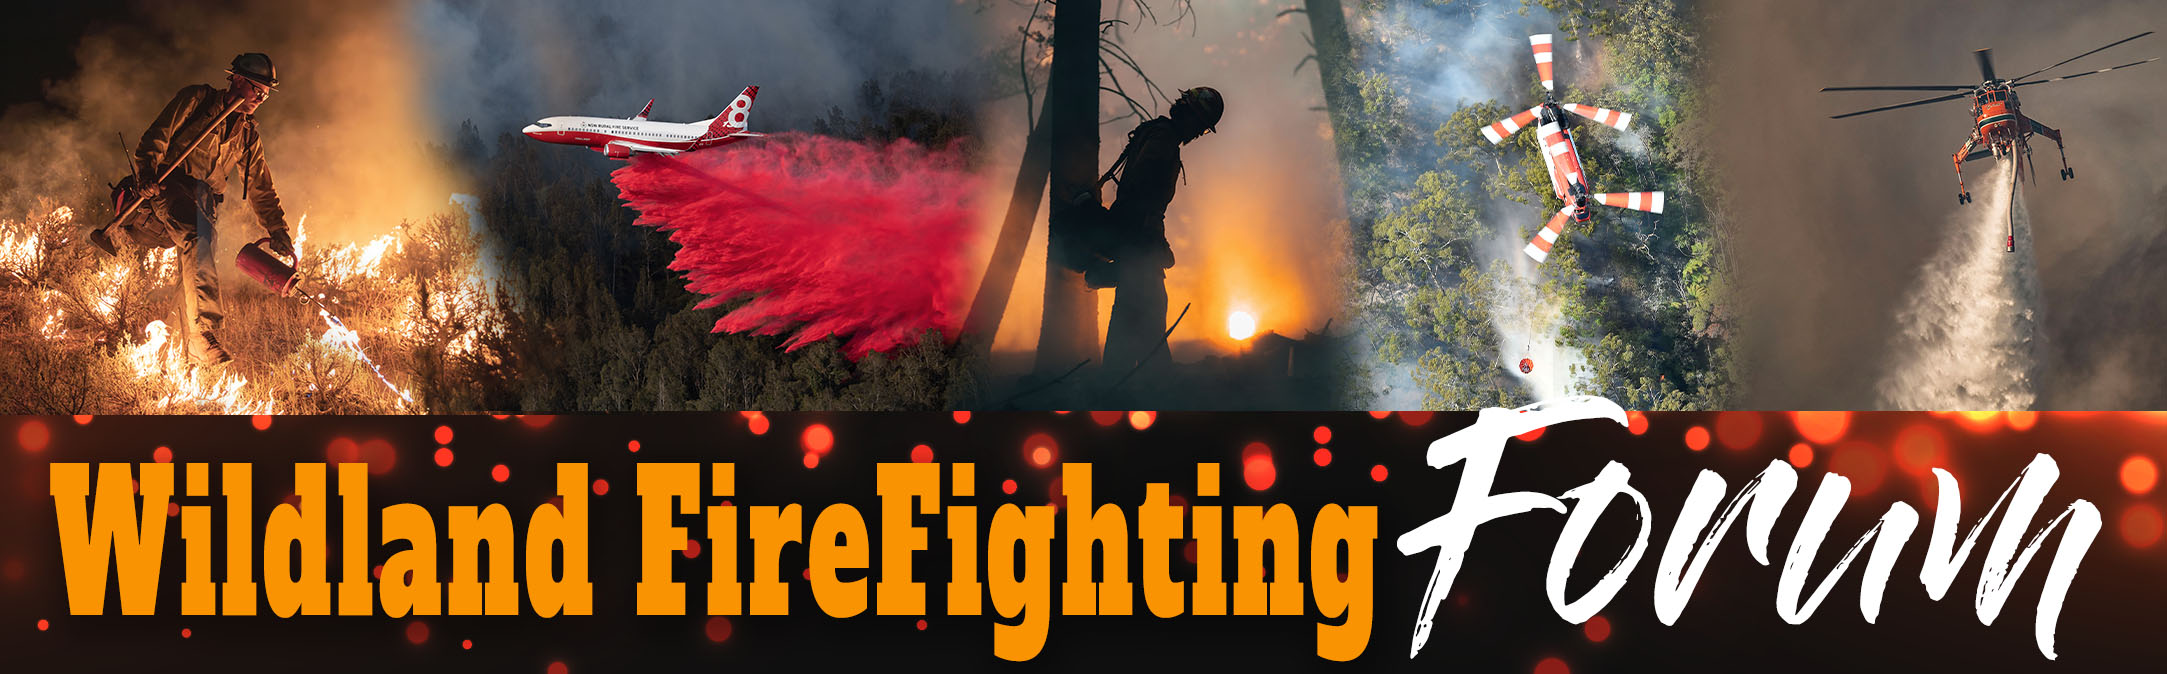 Wildland Fire Fighting Forum